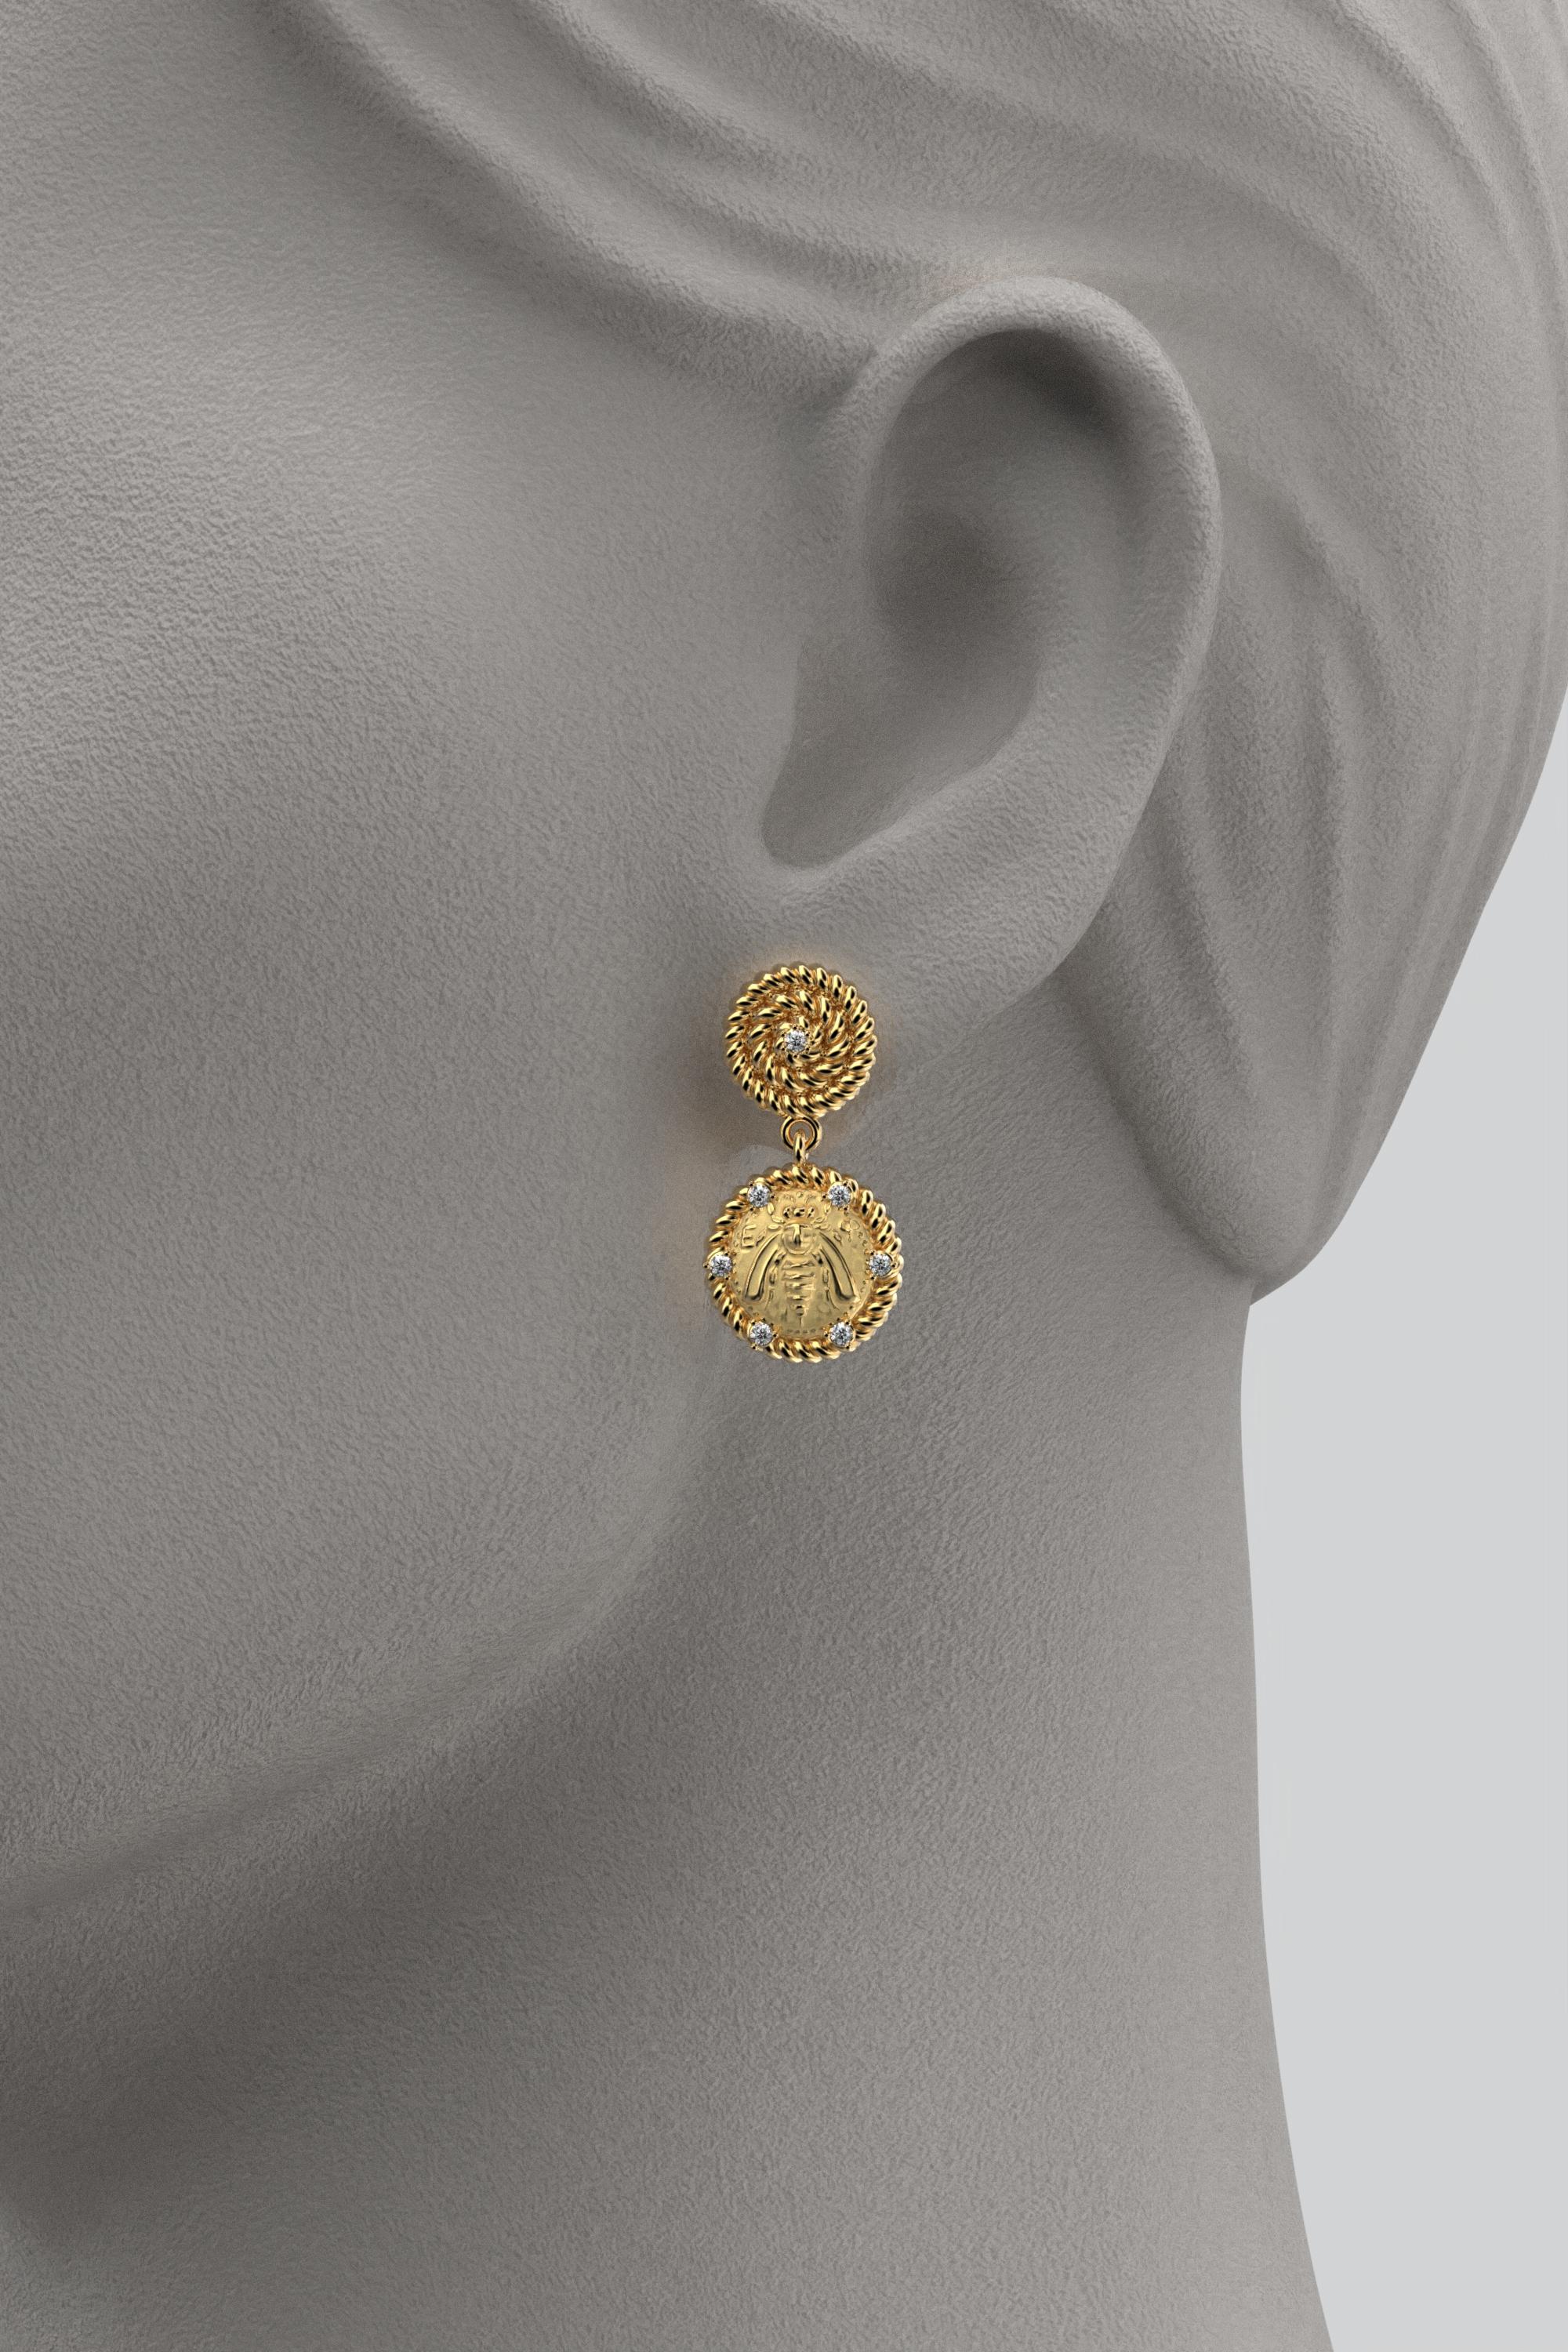 Brilliant Cut Italian Jewelry | 18k Gold Dangle Earrings With Diamonds | Bee Earrings  For Sale